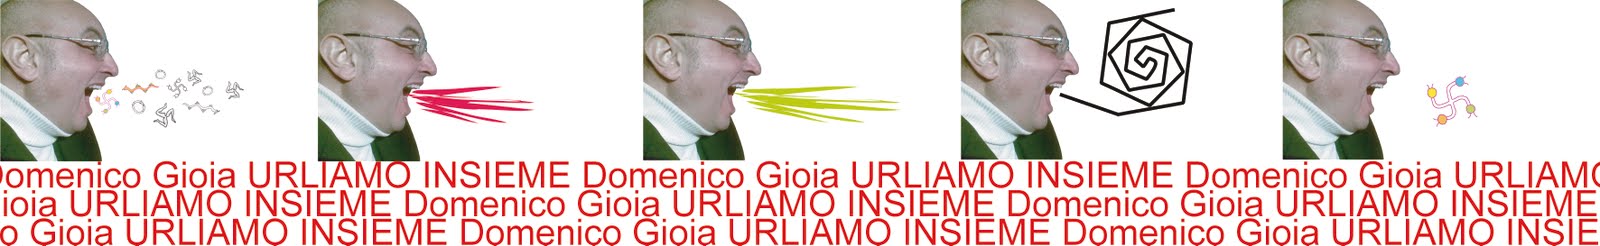 Domenico Gioia - Urliamo!